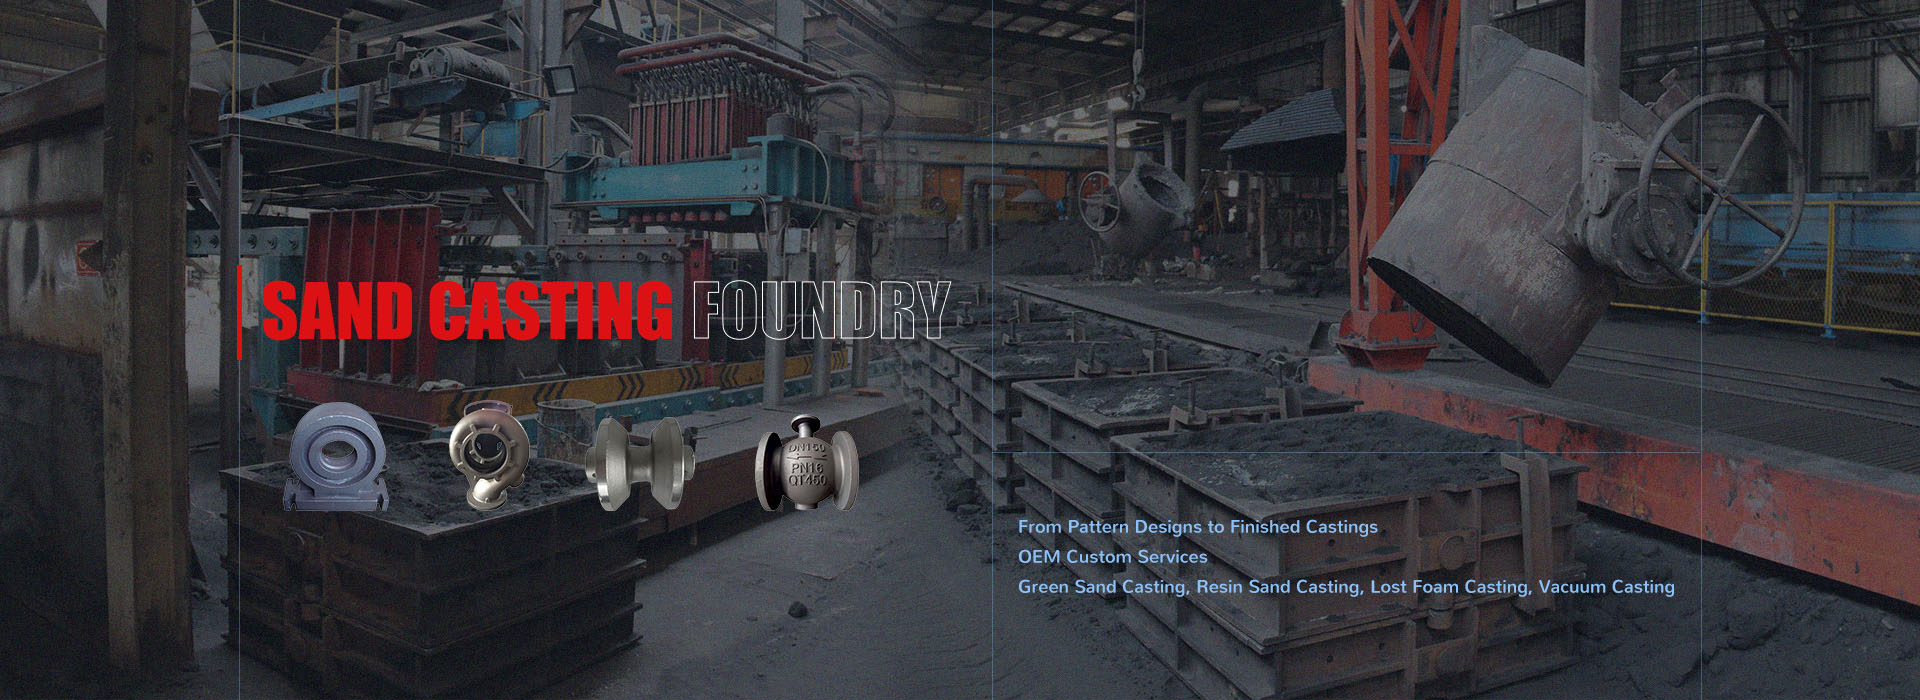 Fundición de fundición en arena de hierro gris y hierro dúctil en China